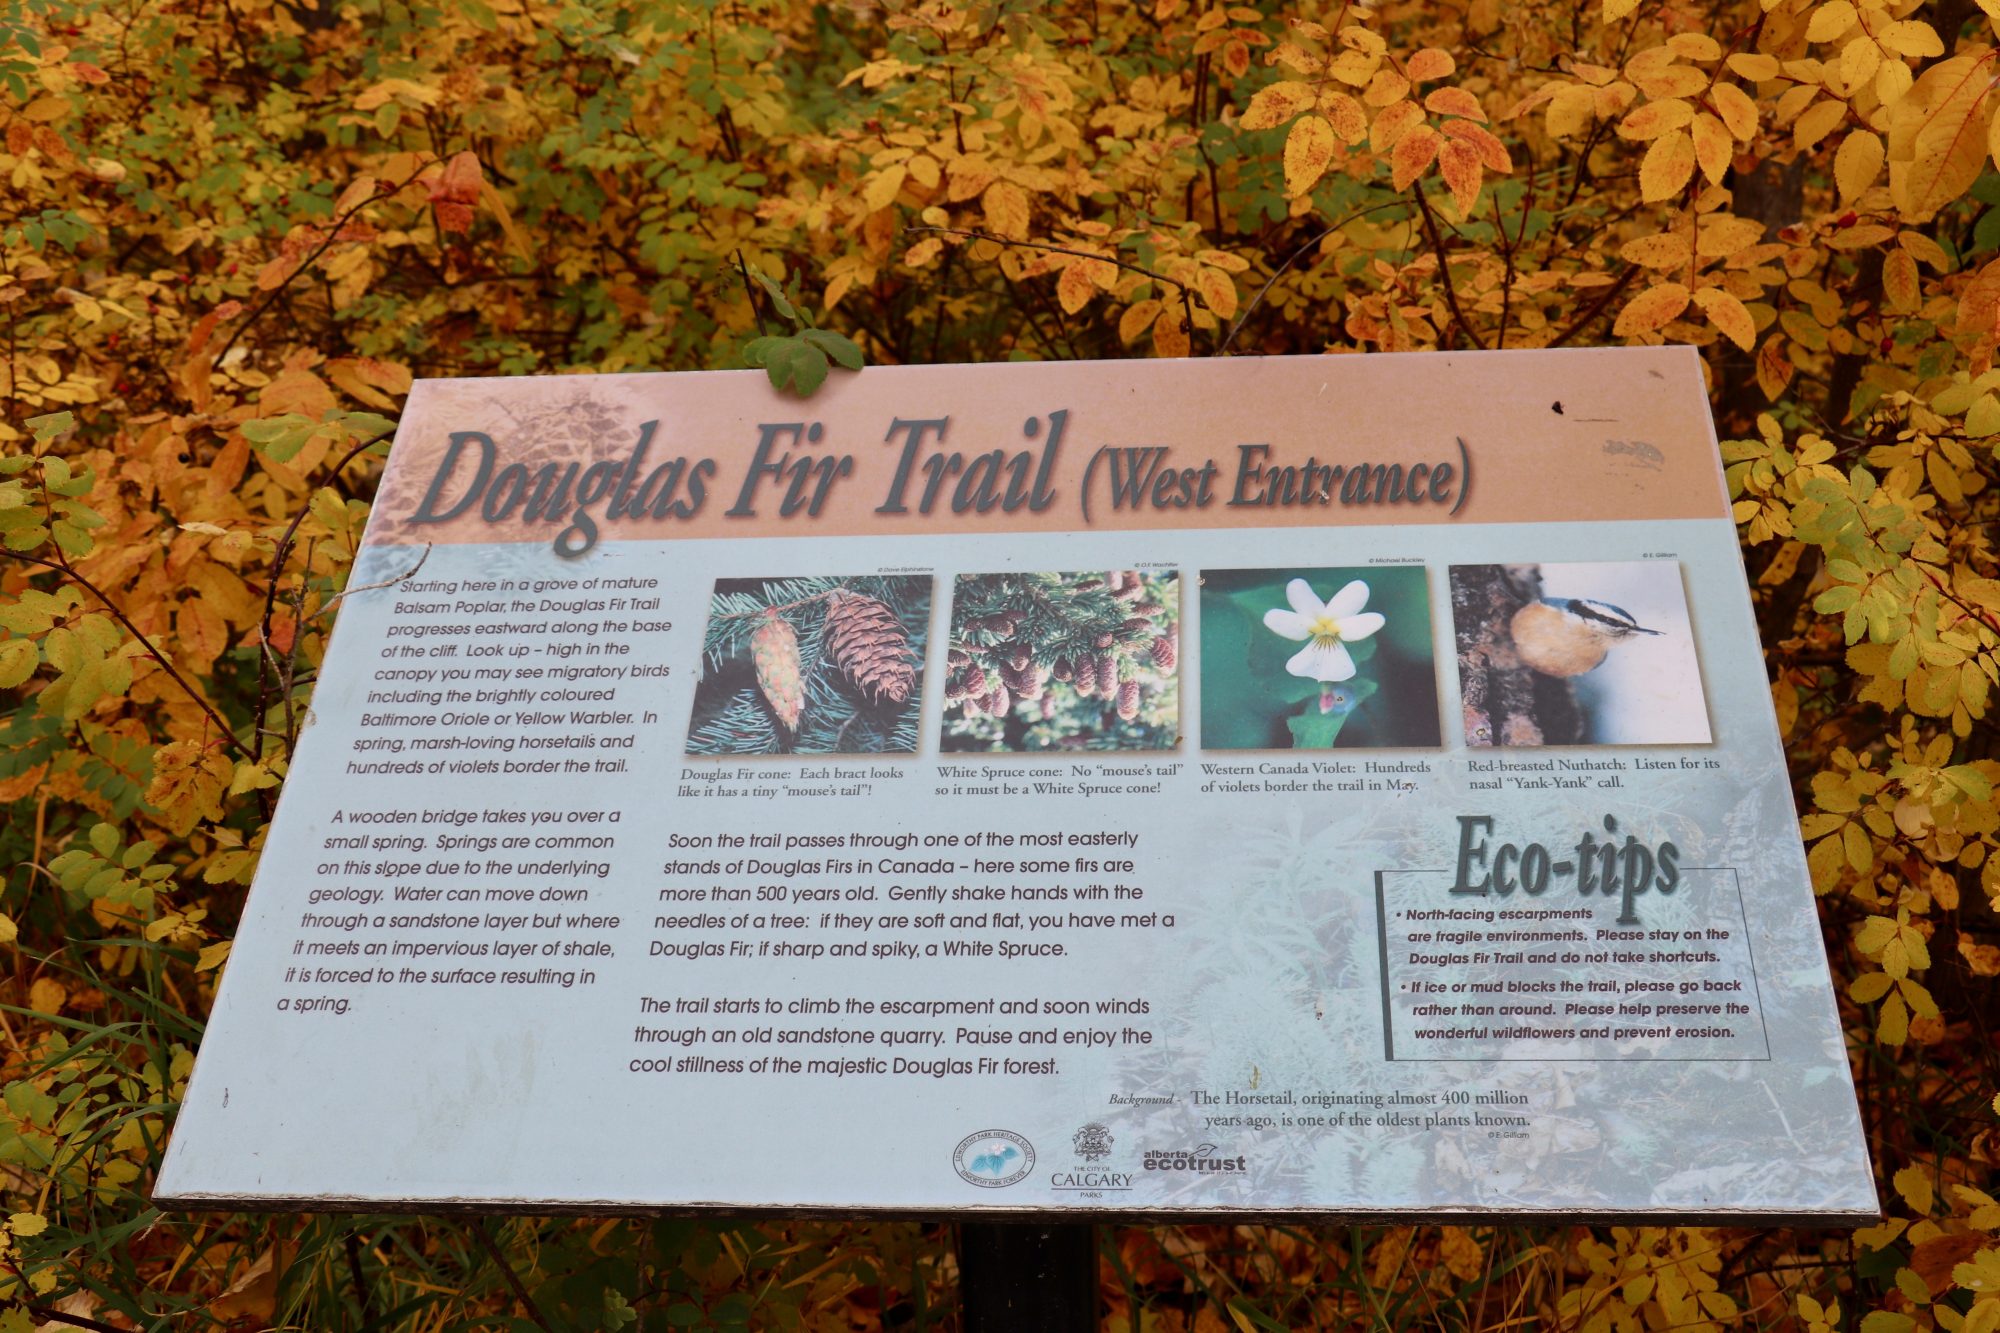 Douglas Fir Trail Edworthy Park (Family Fun Calgary)